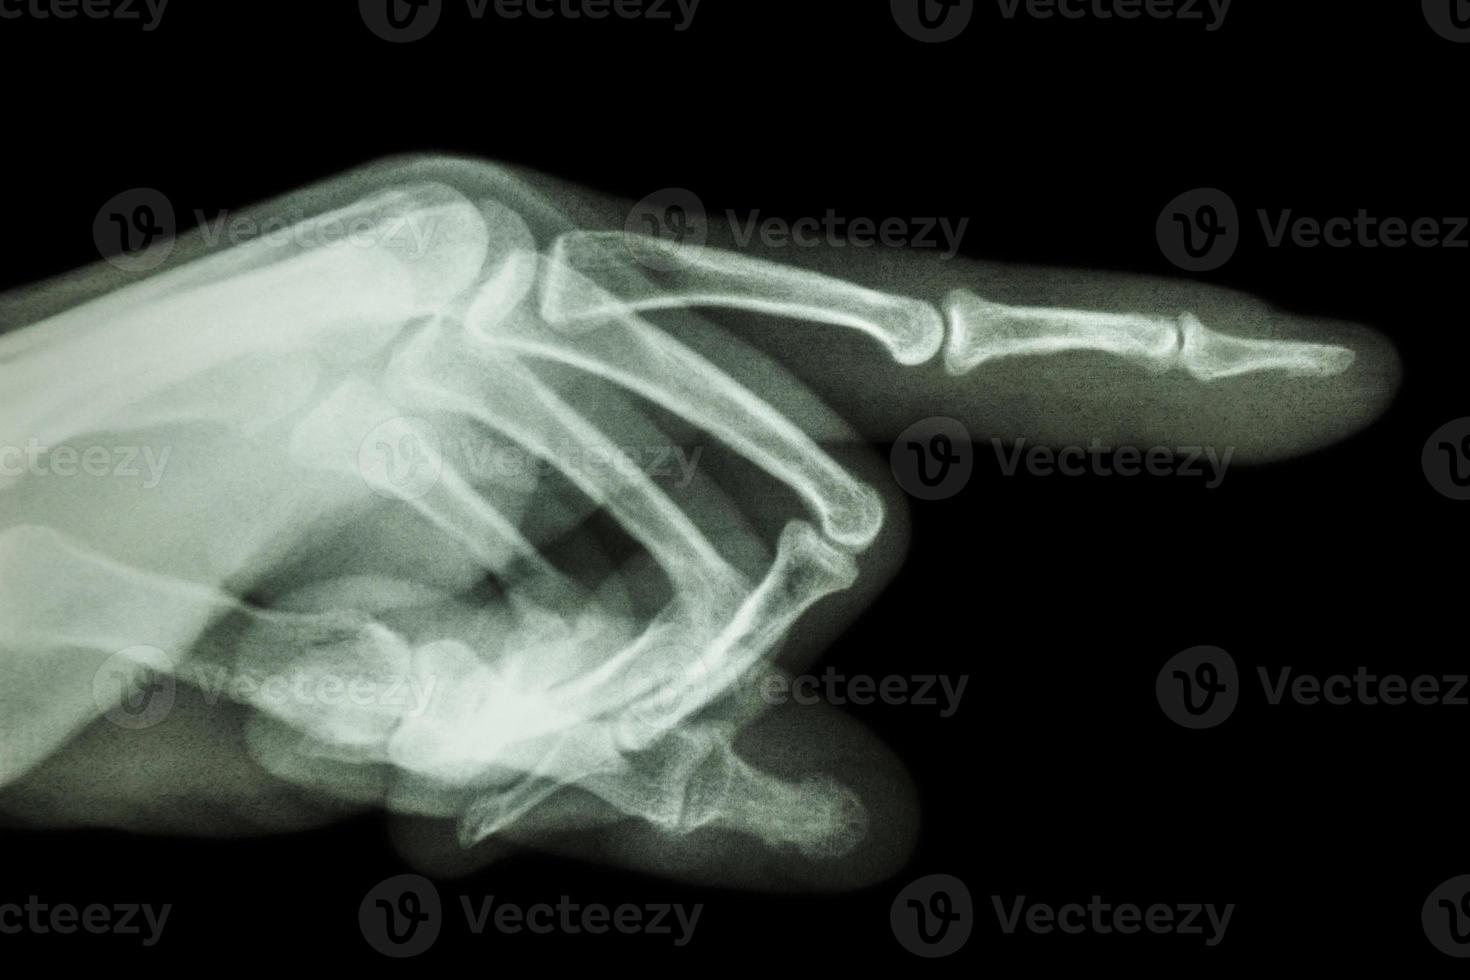 humano está apontando o dedo filme raio x foto